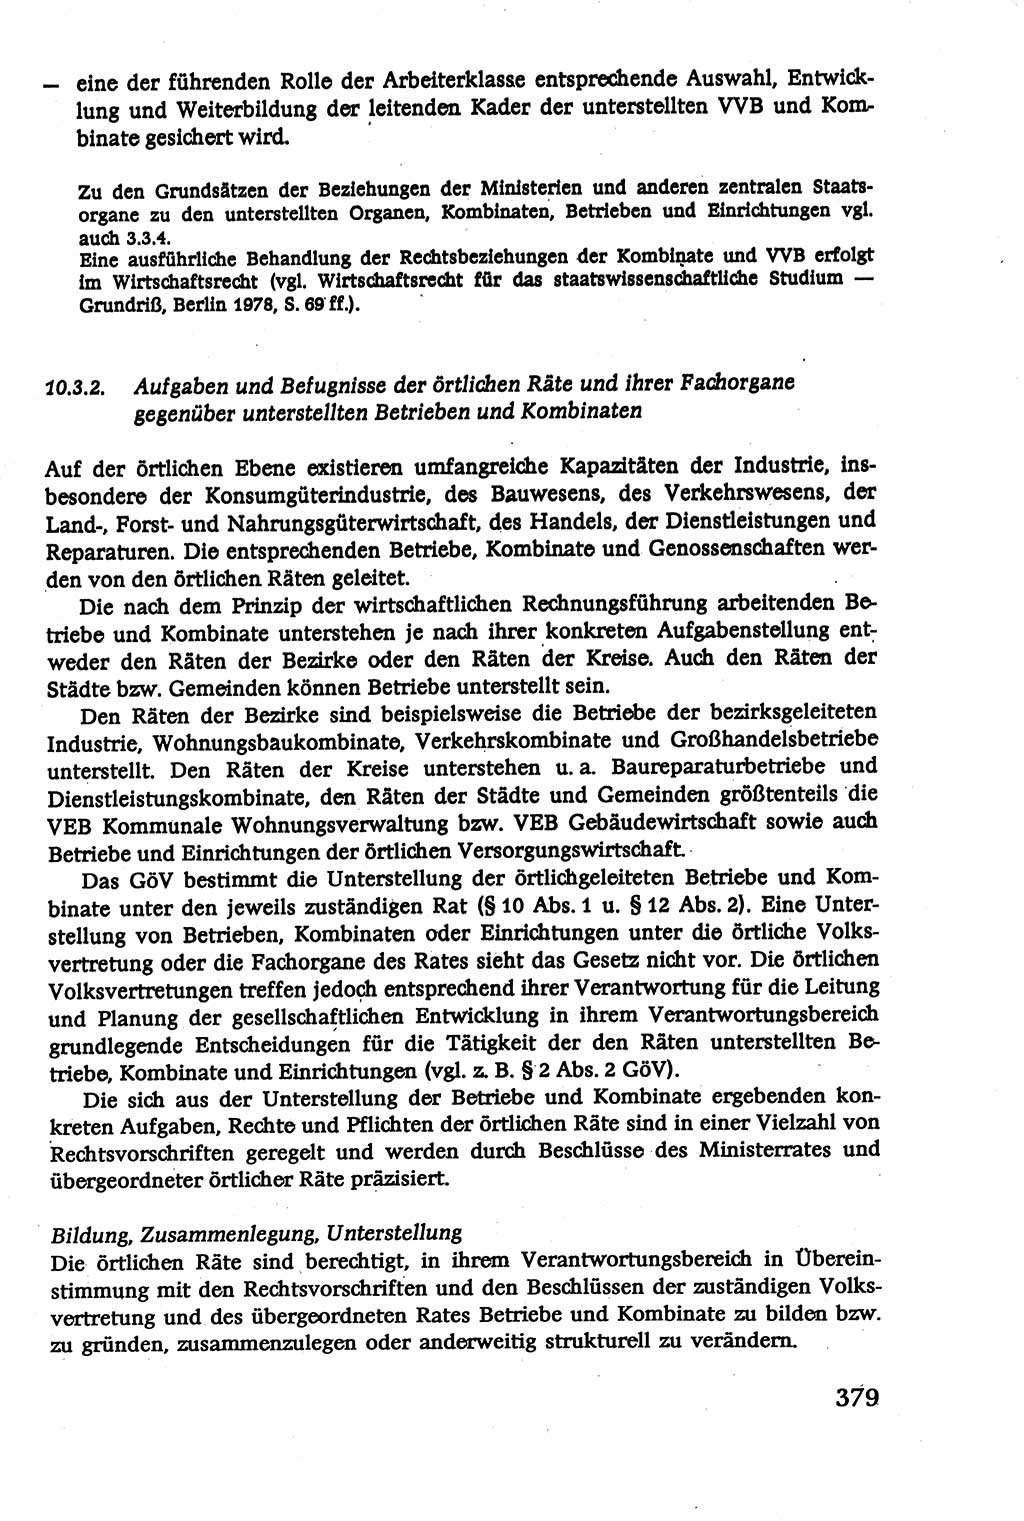 Verwaltungsrecht [Deutsche Demokratische Republik (DDR)], Lehrbuch 1979, Seite 379 (Verw.-R. DDR Lb. 1979, S. 379)